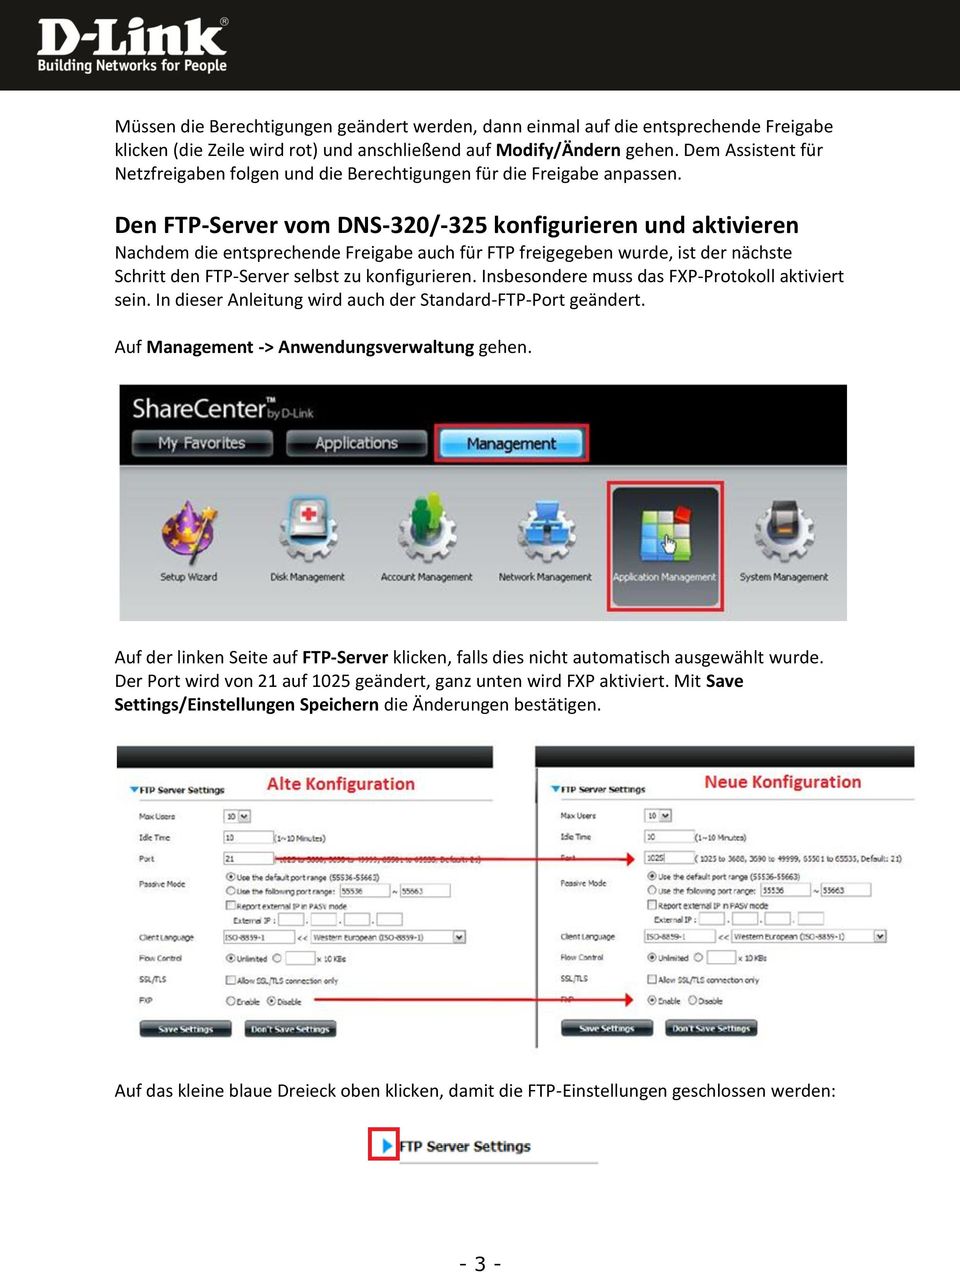 Den FTP-Server vom DNS-320/-325 konfigurieren und aktivieren Nachdem die entsprechende Freigabe auch für FTP freigegeben wurde, ist der nächste Schritt den FTP-Server selbst zu konfigurieren.